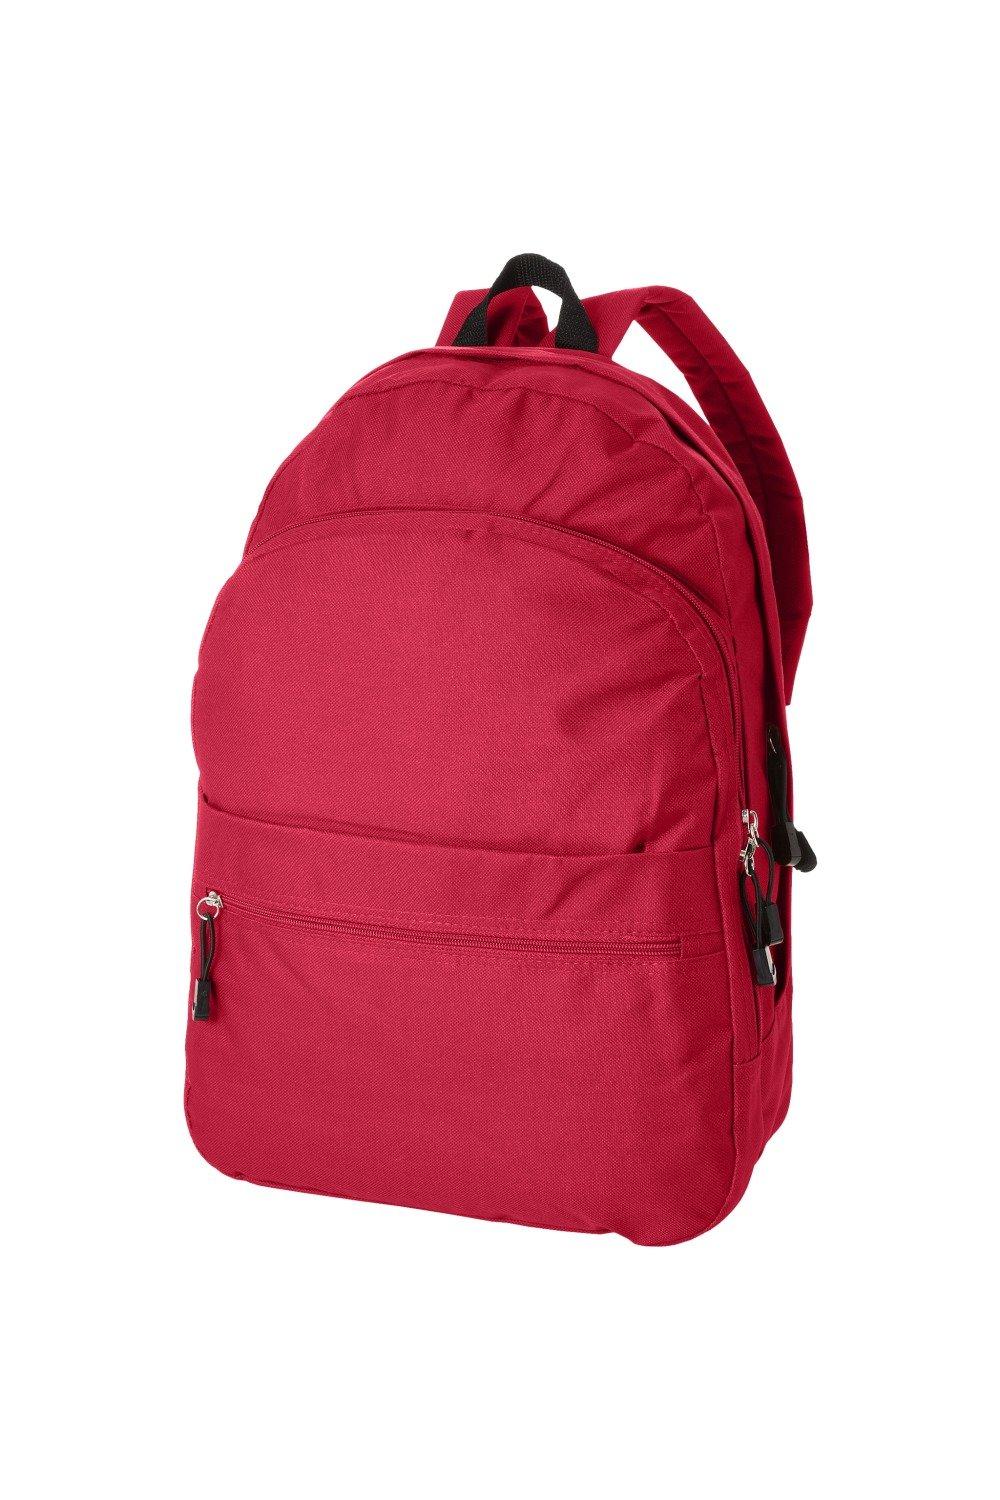 Трендовый рюкзак Bullet, красный рюкзак с карманом единорог